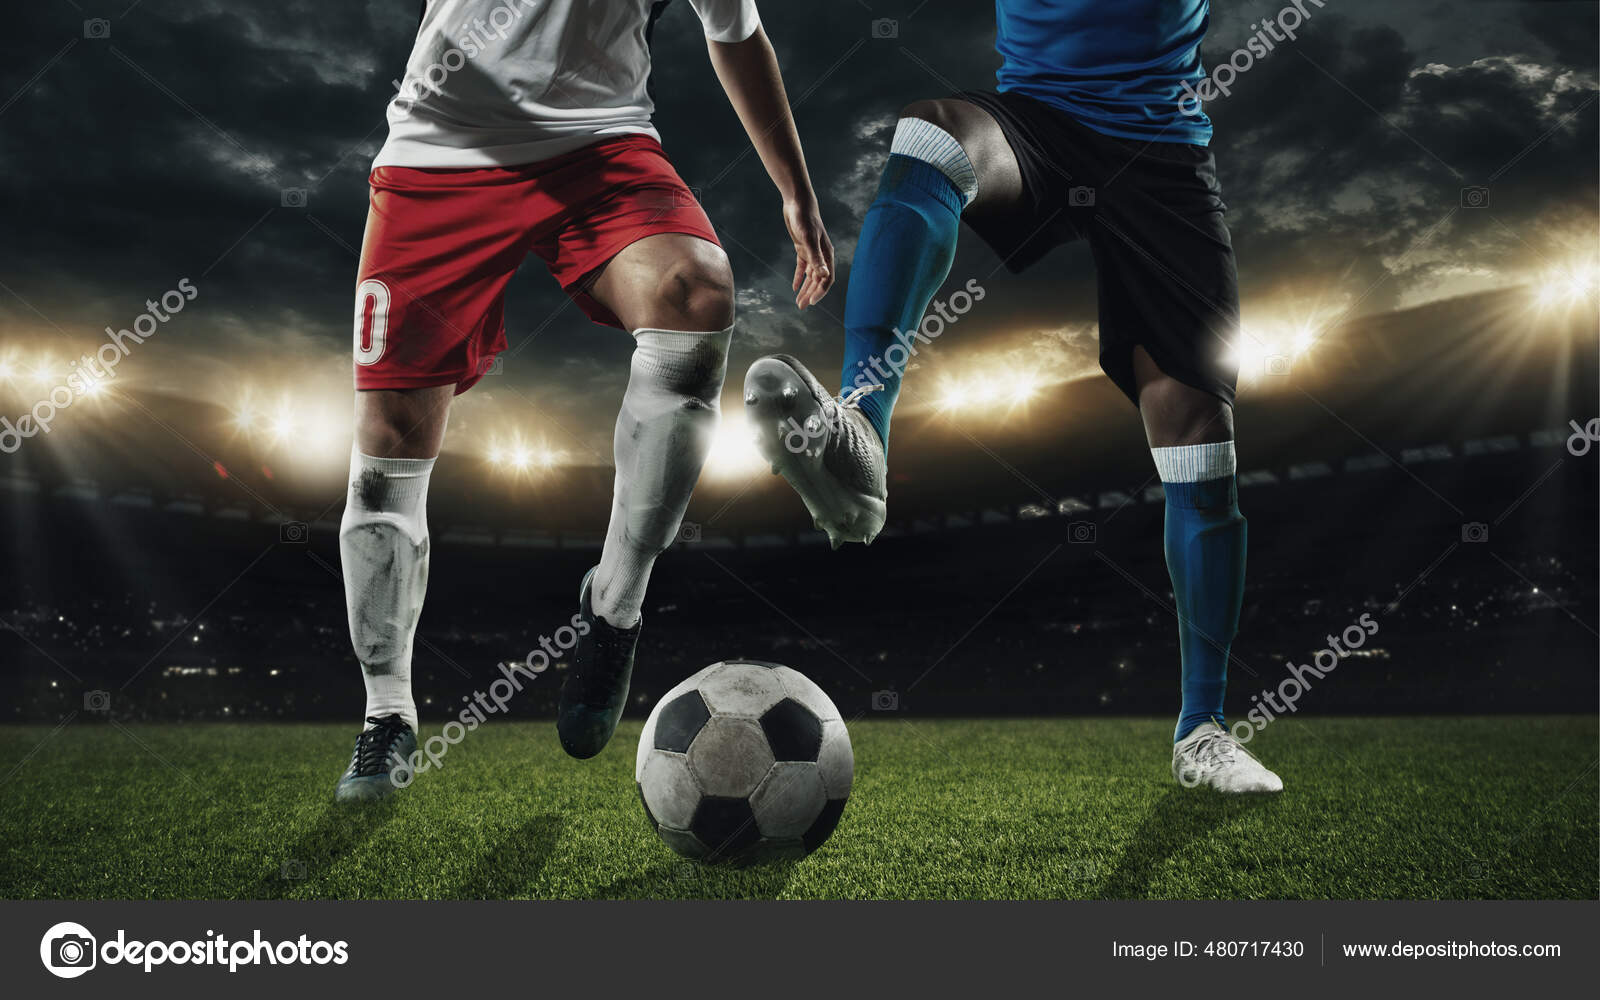 Jogador De Futebol Ou Futebol Em Ação No Estádio Com Lanternas